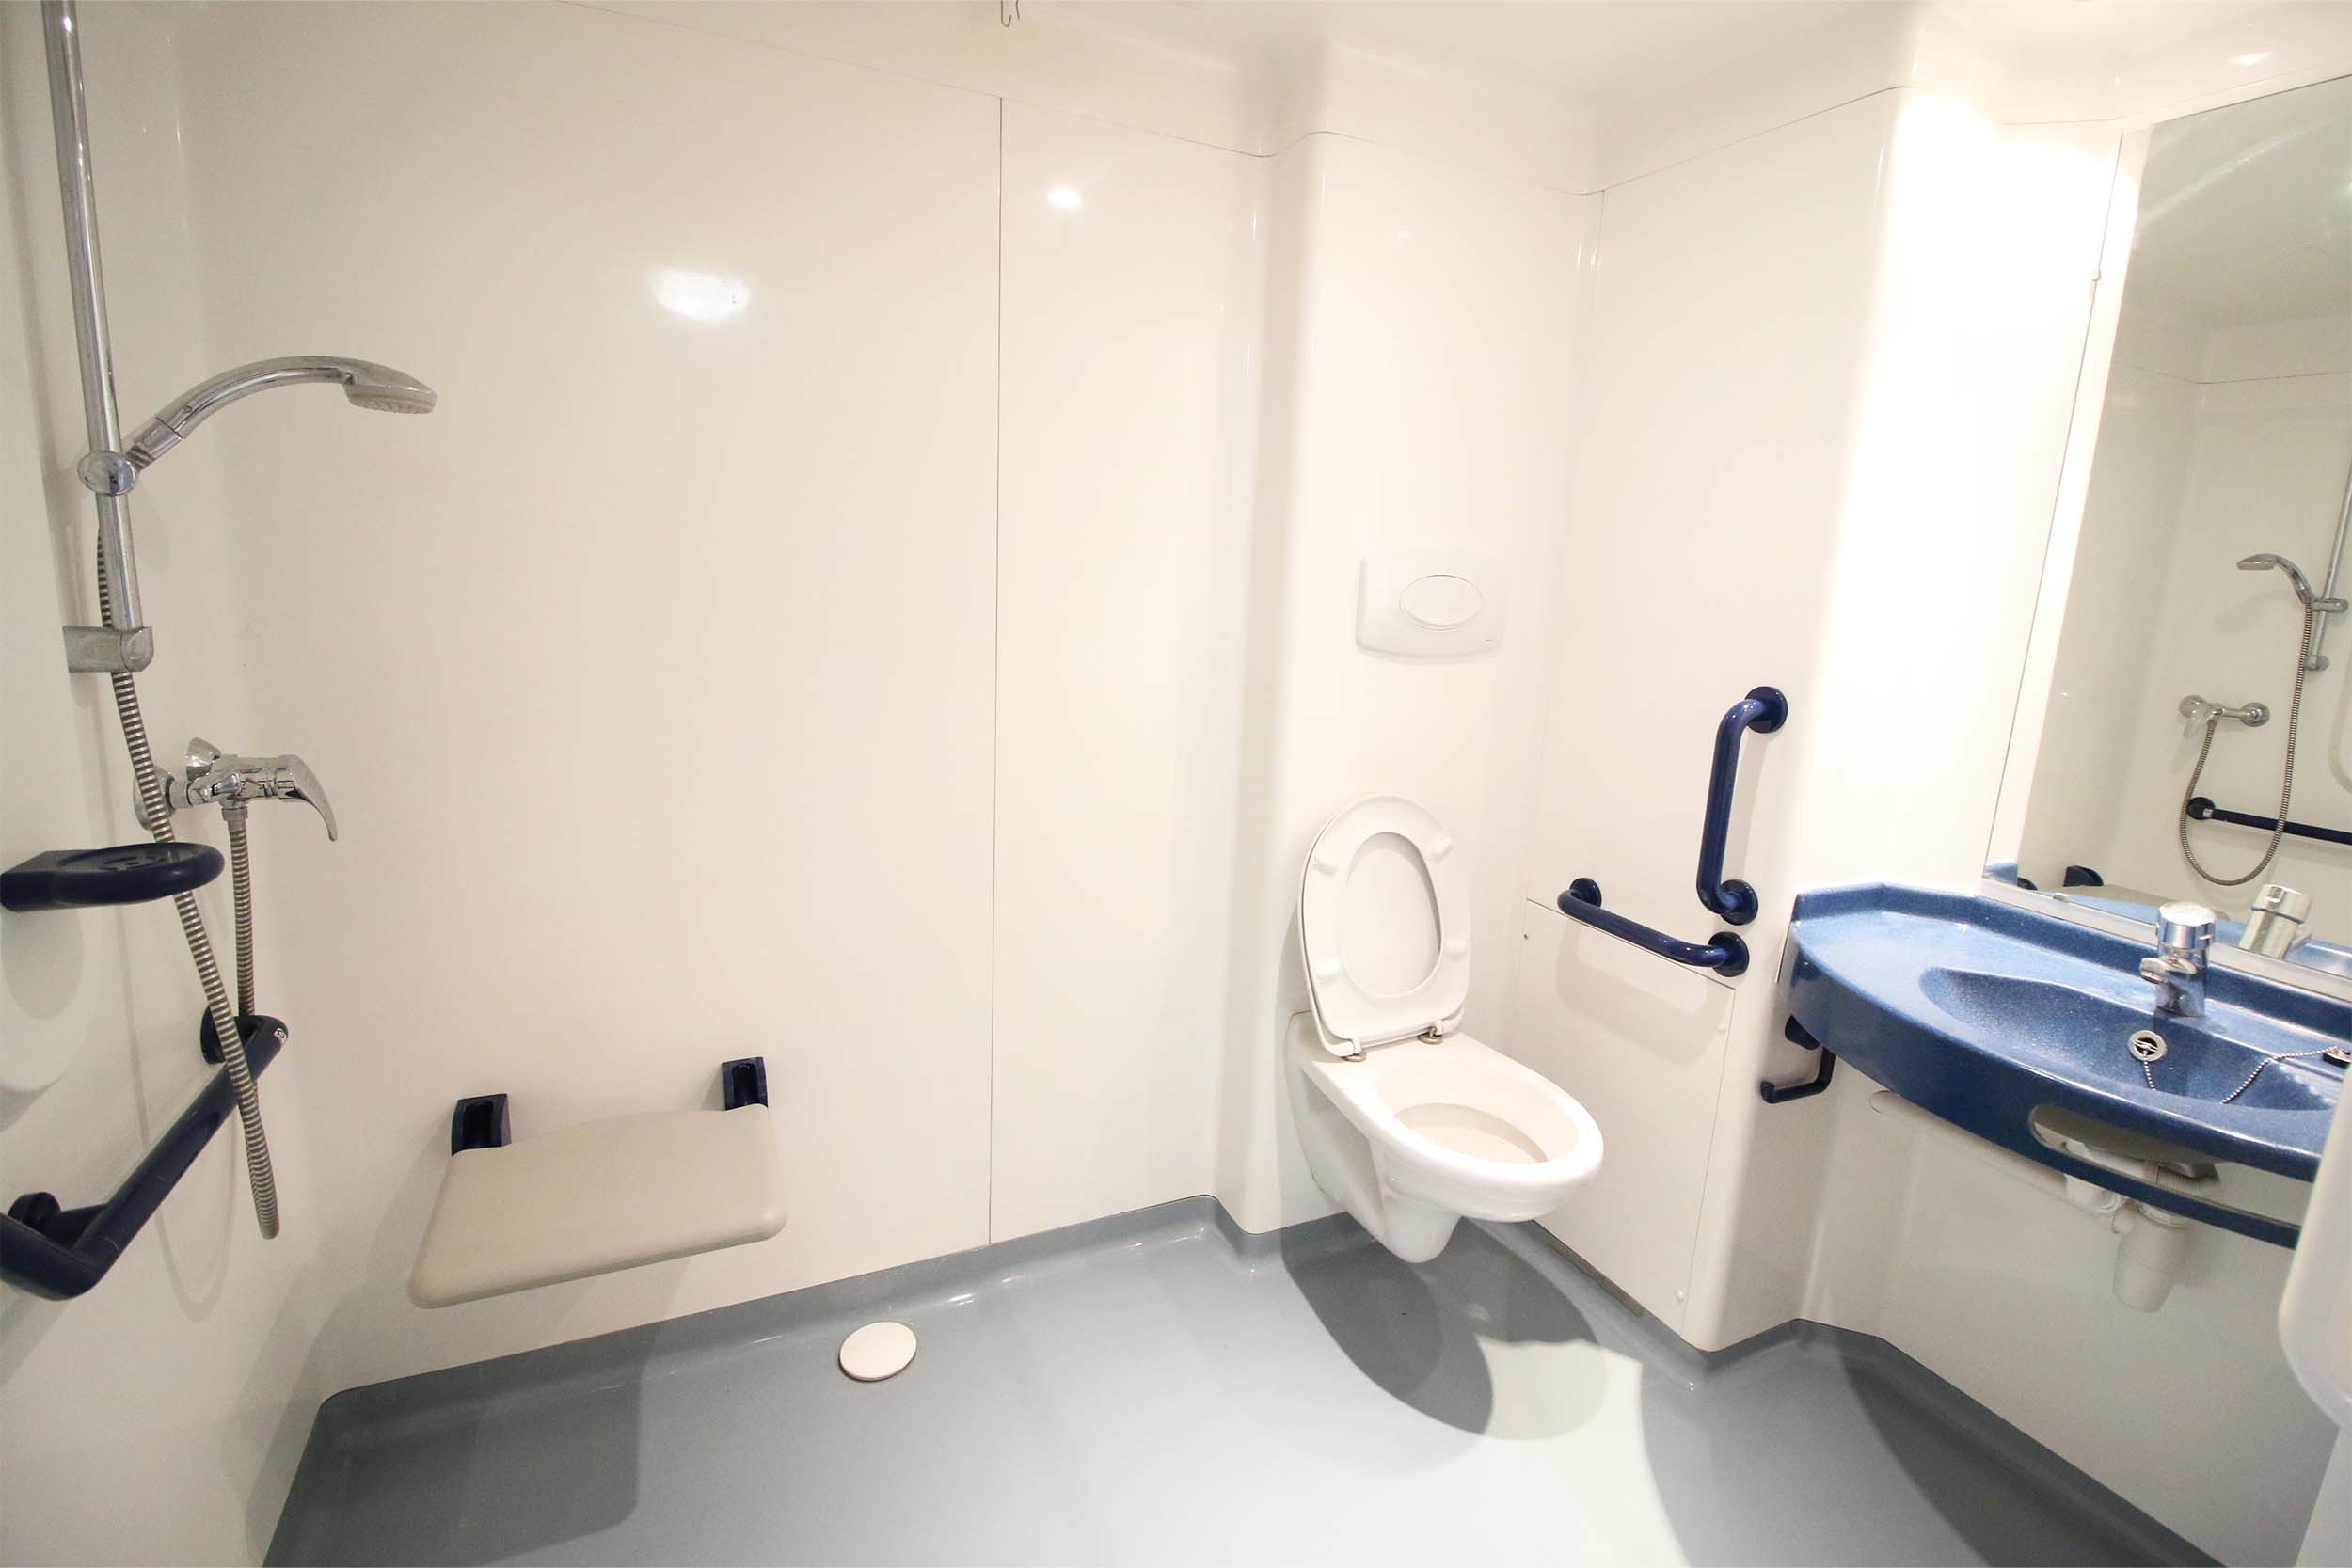 Logement adapté handicap - salle de bain - Crous Clermont Auvergne